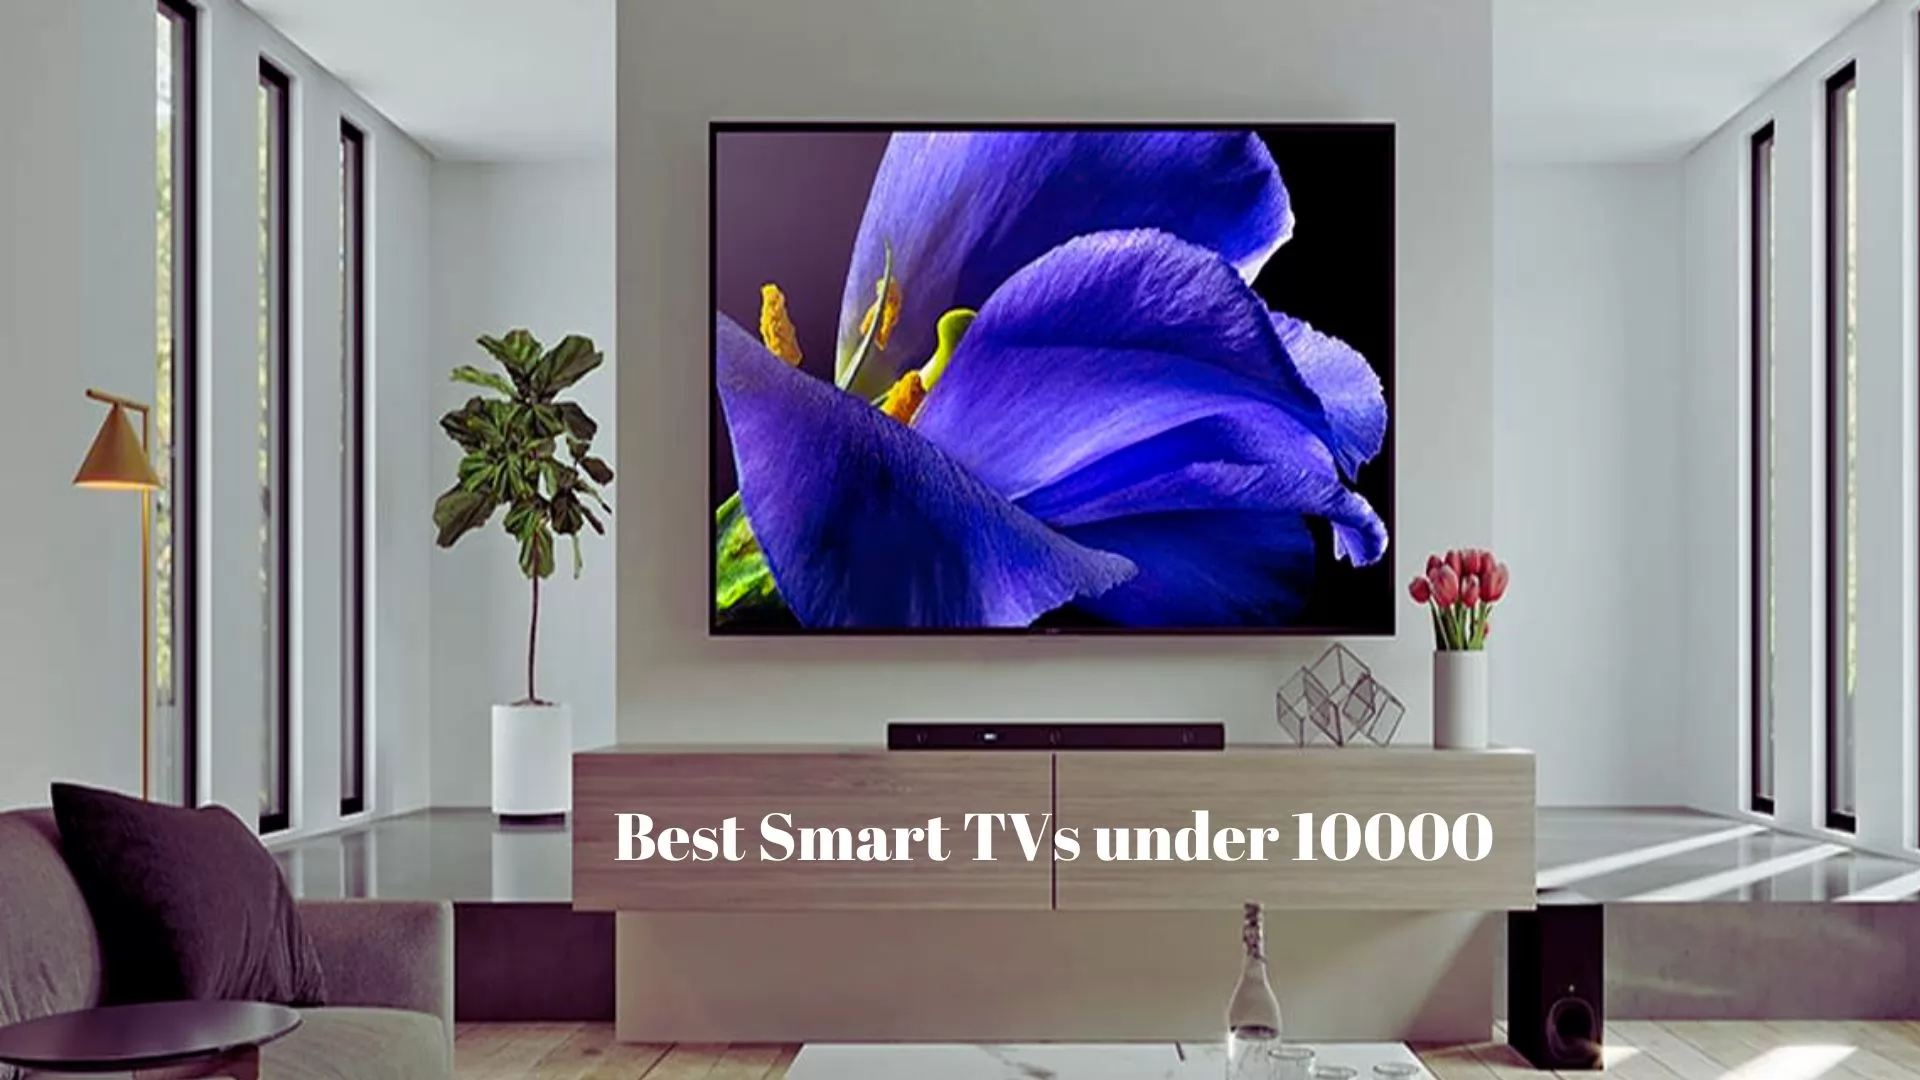 Best Smart Tvs Under 10000